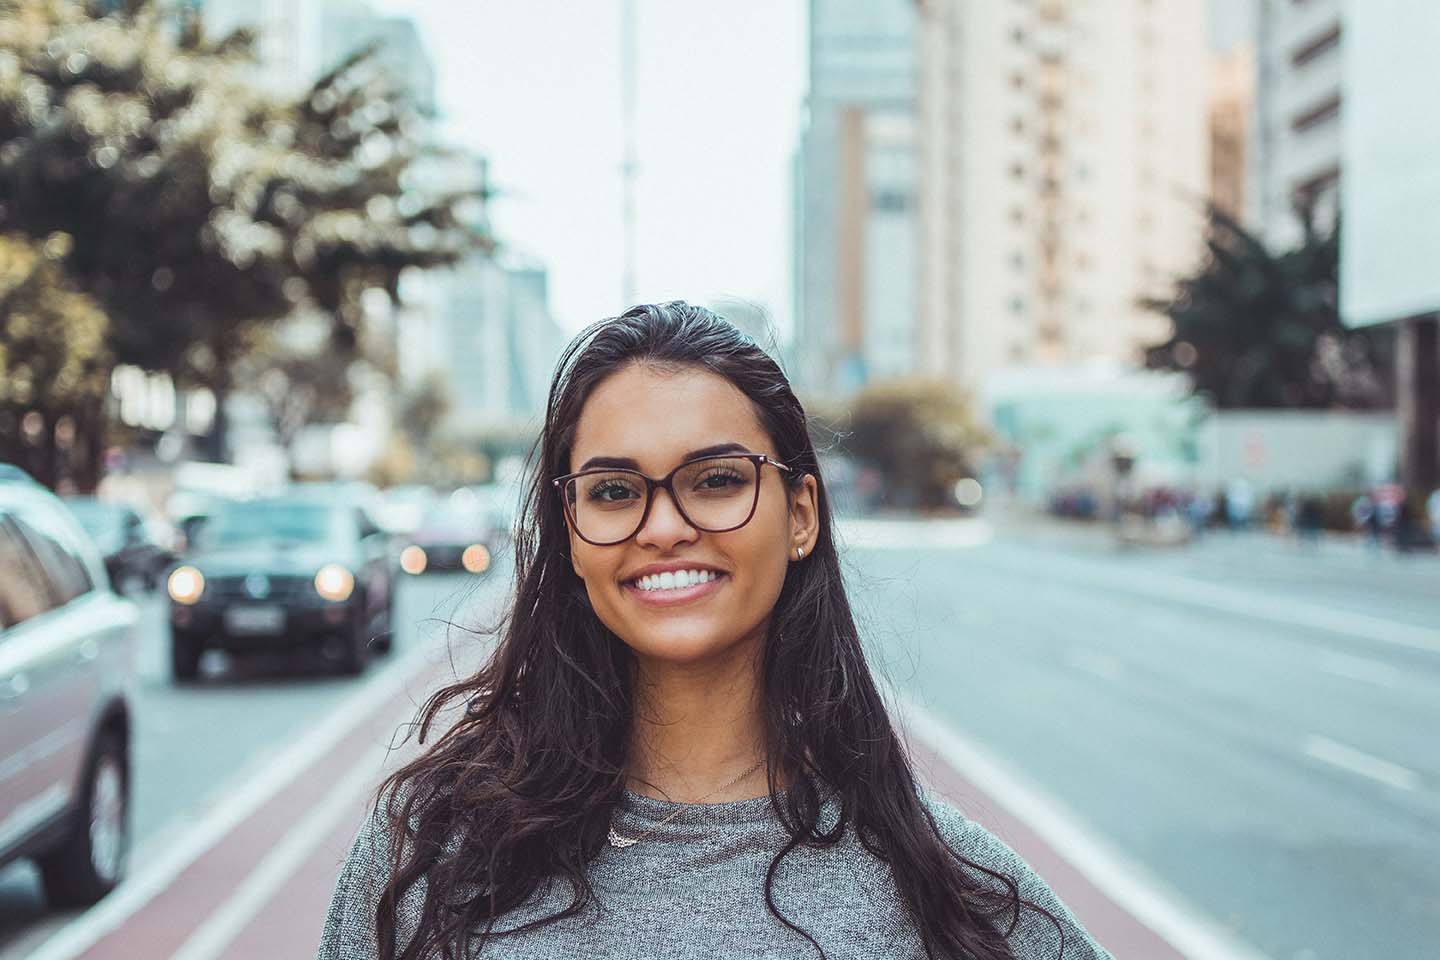 Smiling woman wearing eyeglasses